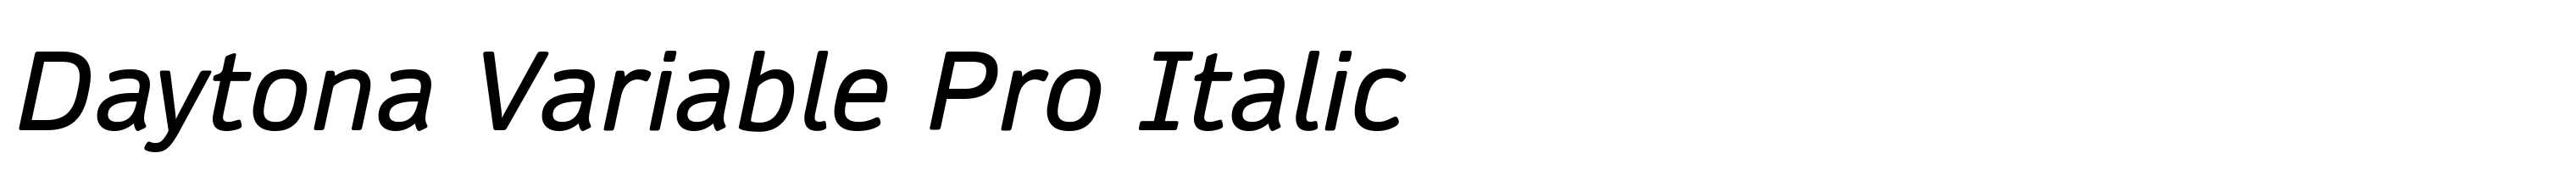 Daytona Variable Pro Italic